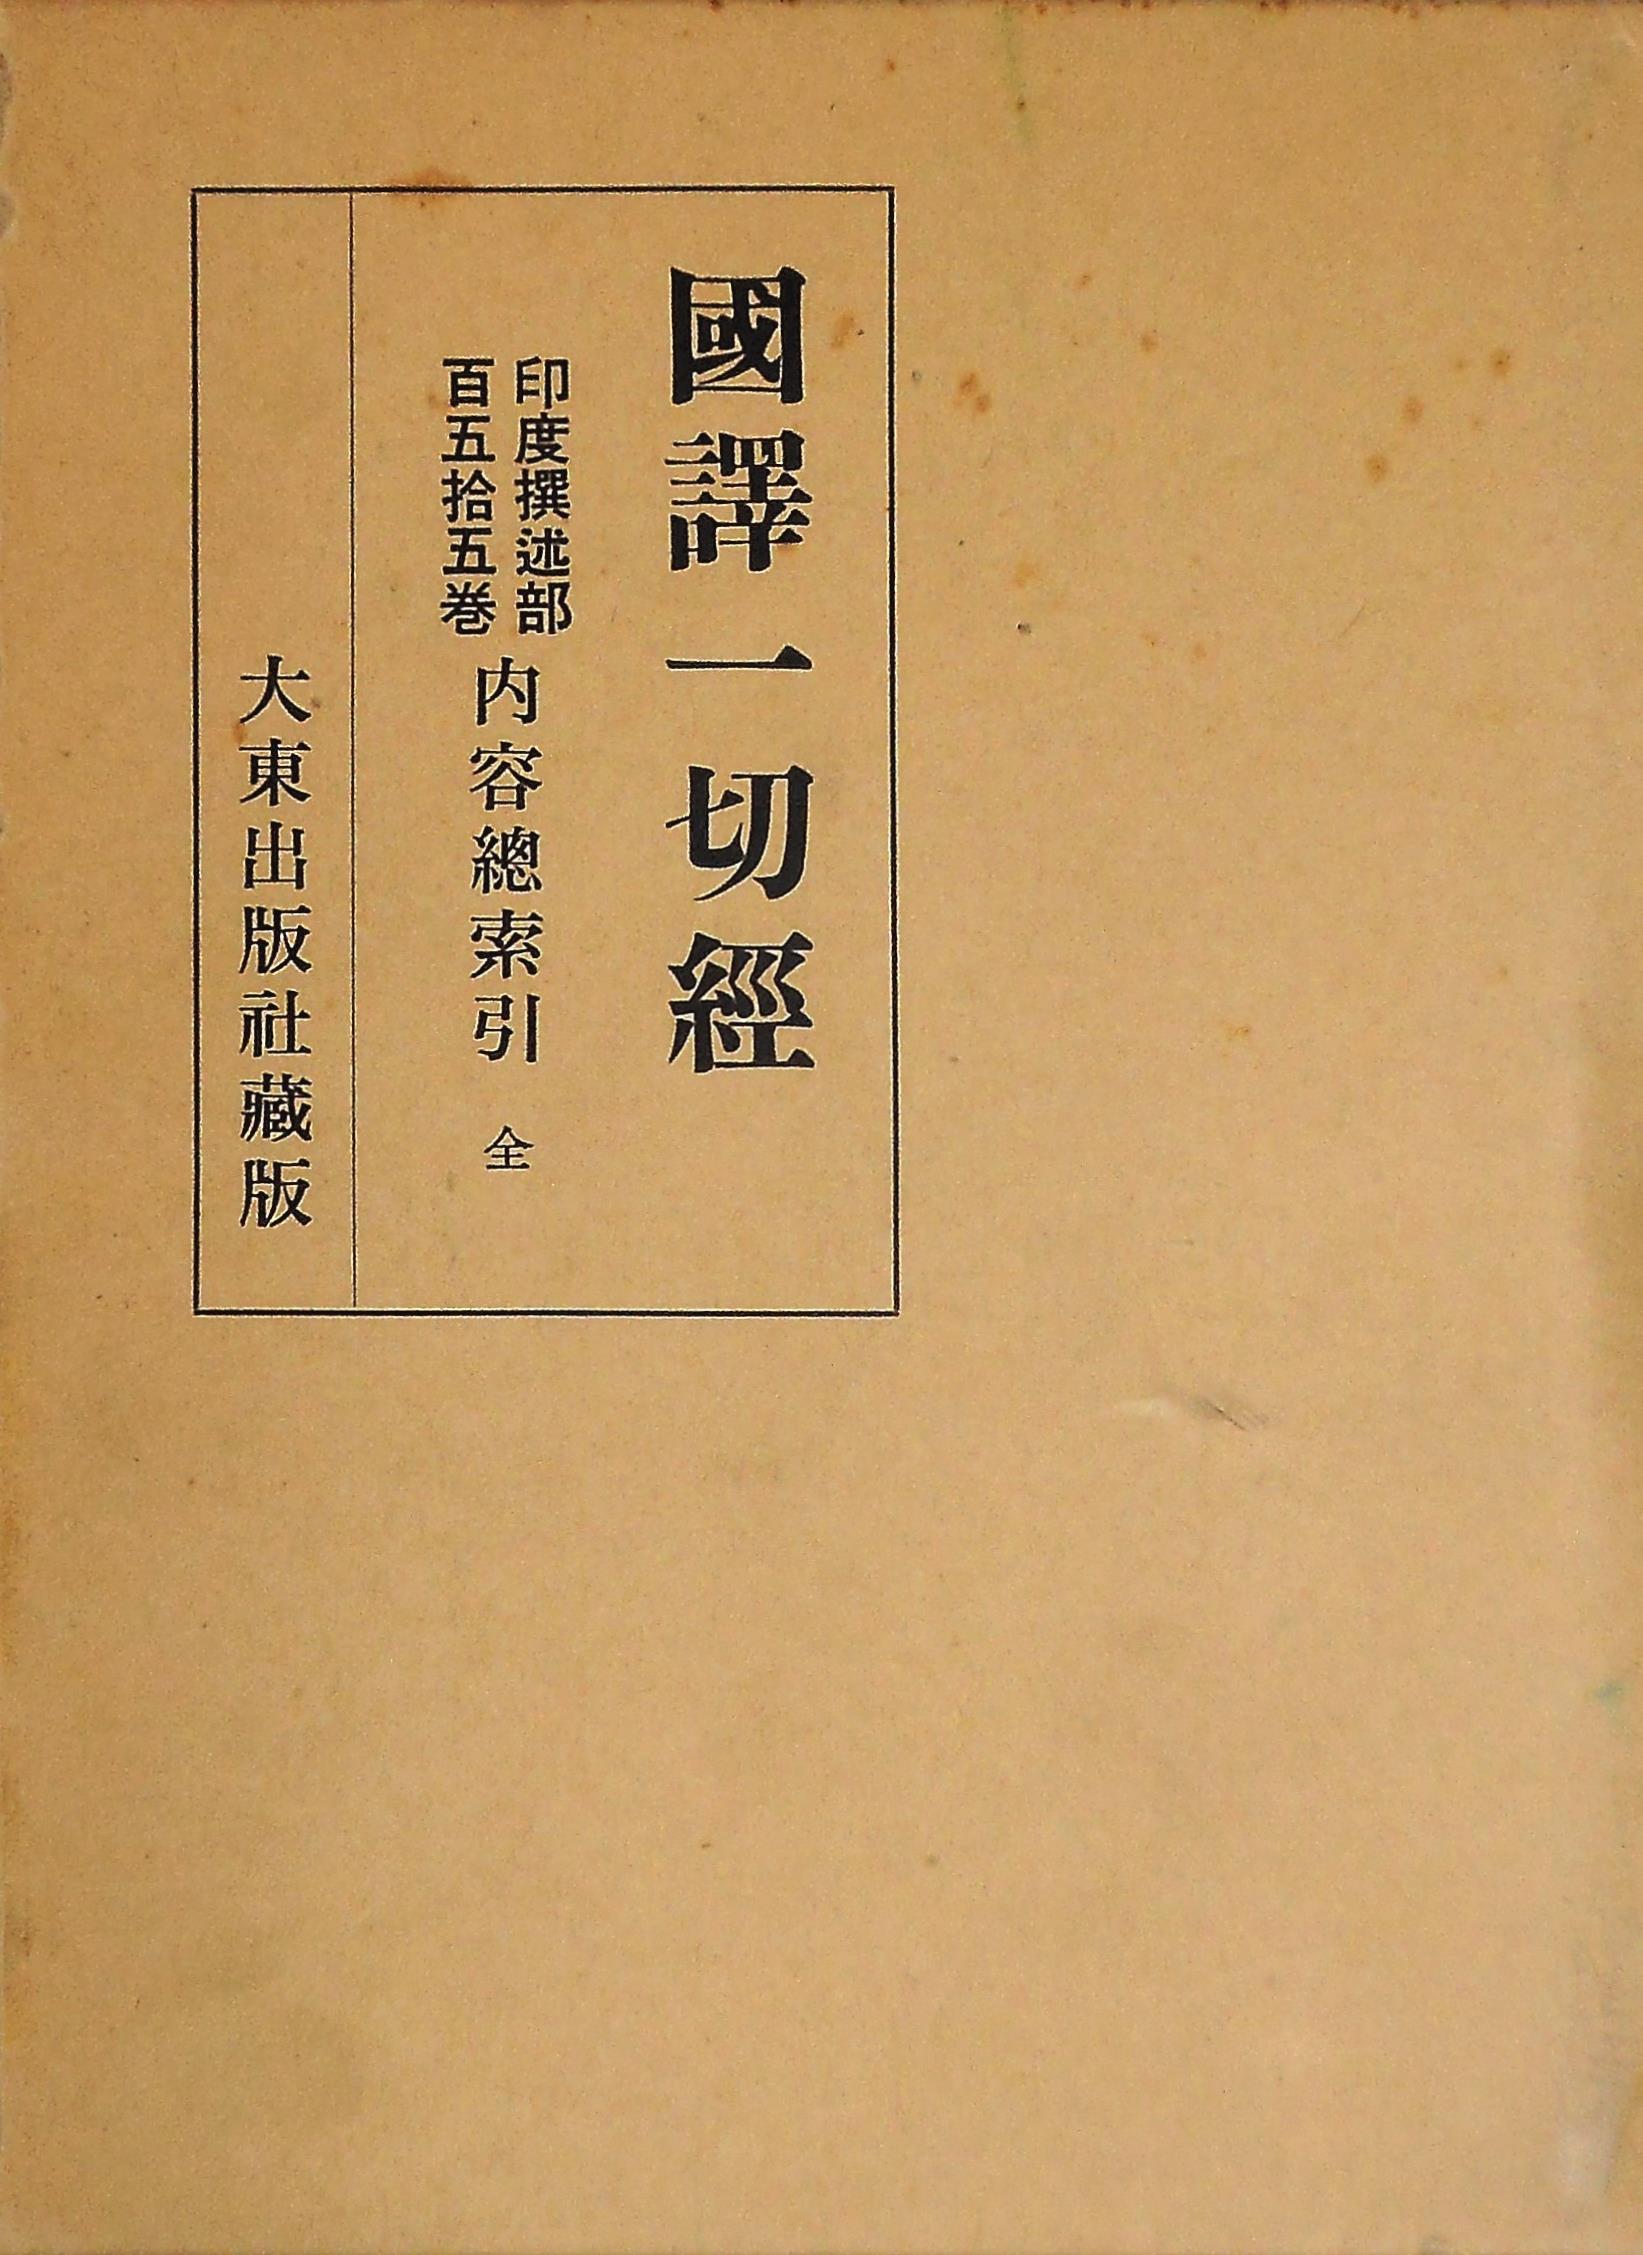 続天台宗全書』ほか仏教関係古書を出張買取いたしました。 | 東京神田 